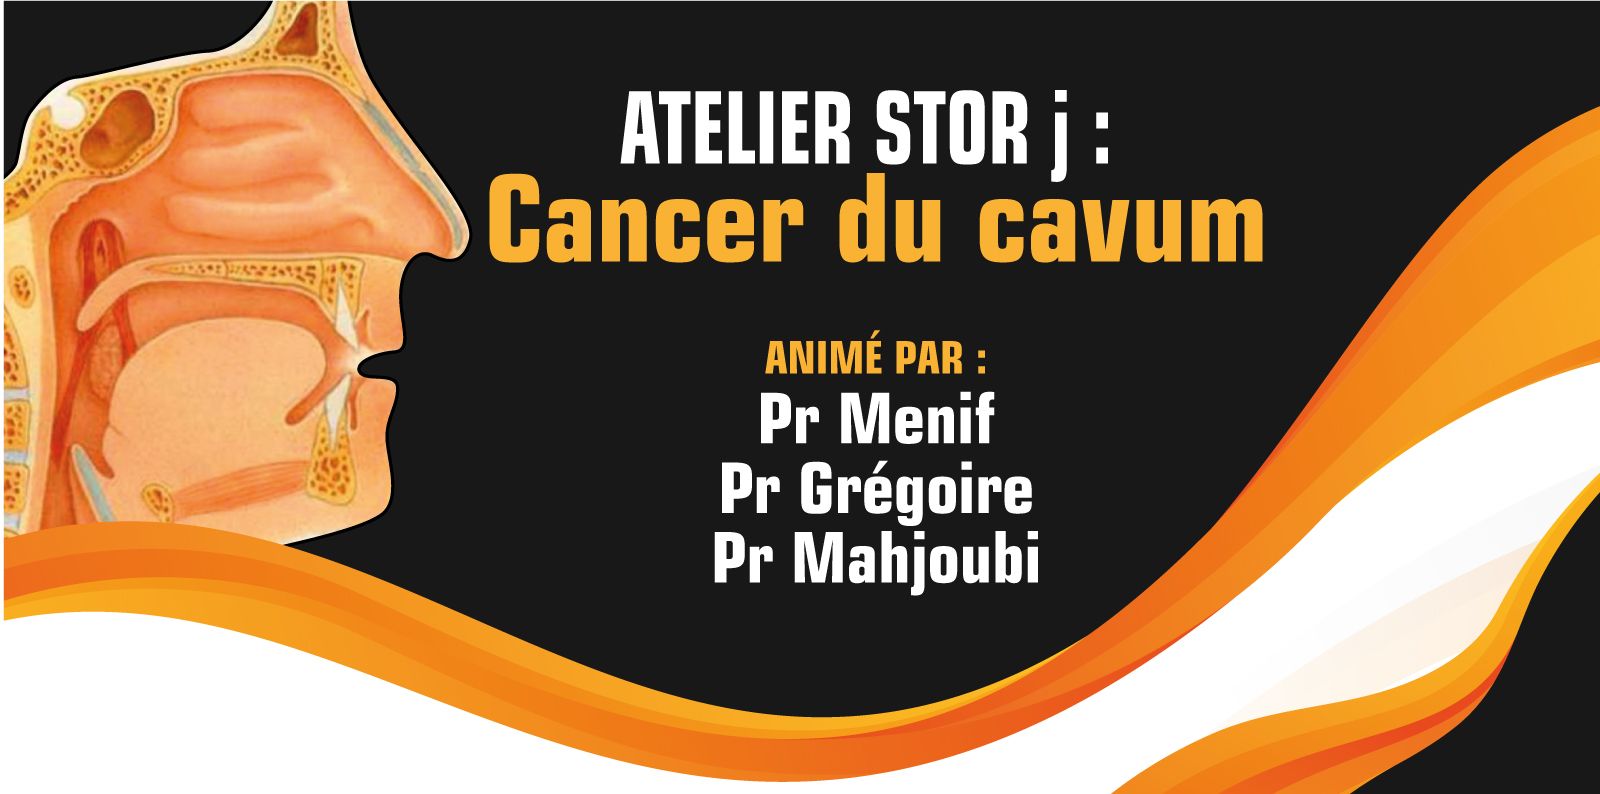 Atelier STOR Junior - Cancer du Cavum